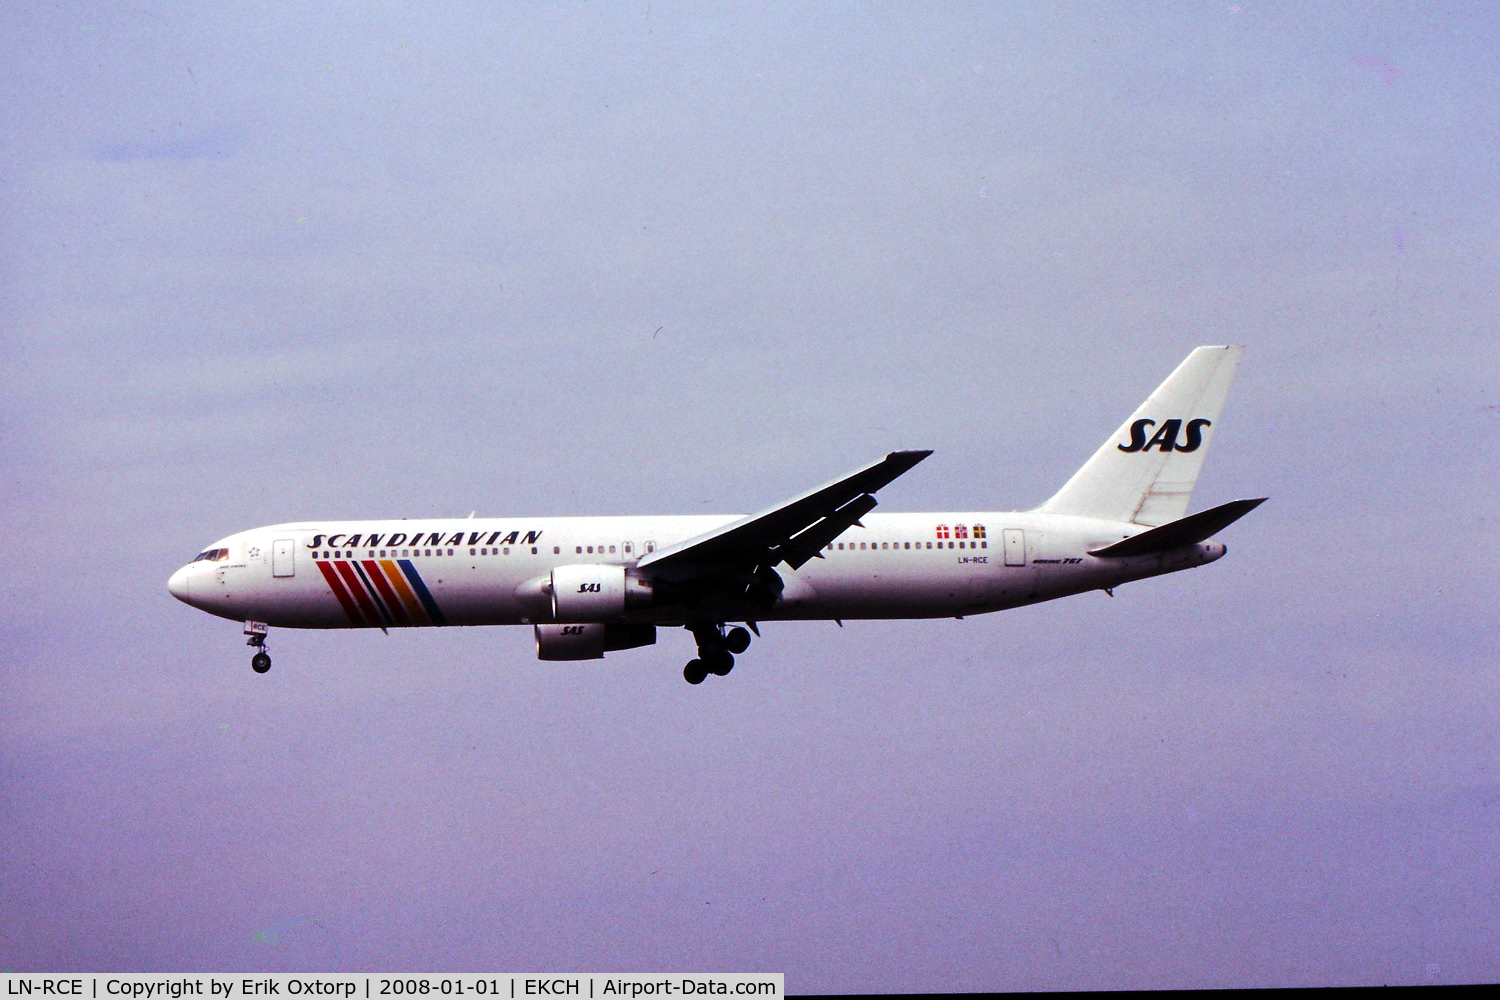 LN-RCE, 1990 Boeing 767-383/ER C/N 24846, LN-RCE about to land rw 22L, MAR01